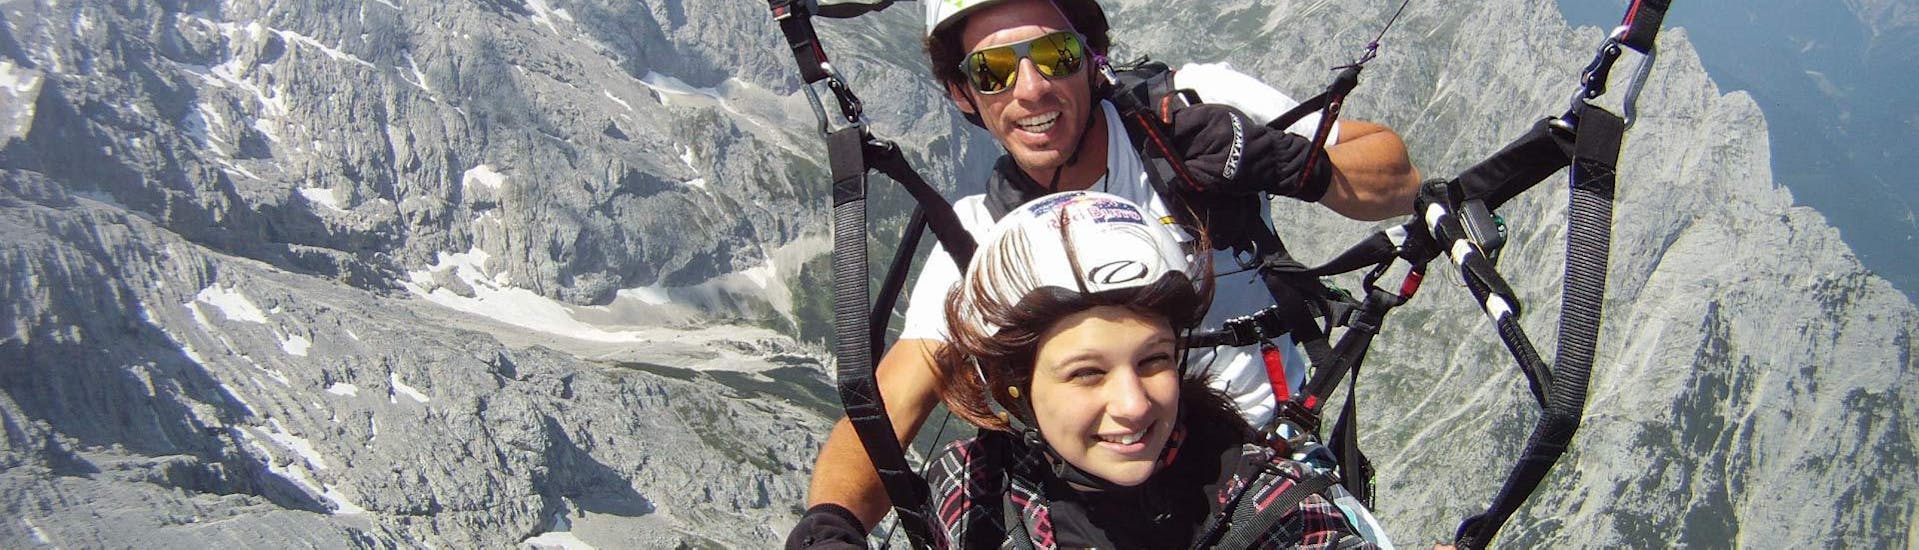 Tandem Paragliding in Garmisch-Partenkirchen - Early Bird with Aerotaxi Garmisch-Partenkirchen - Hero image